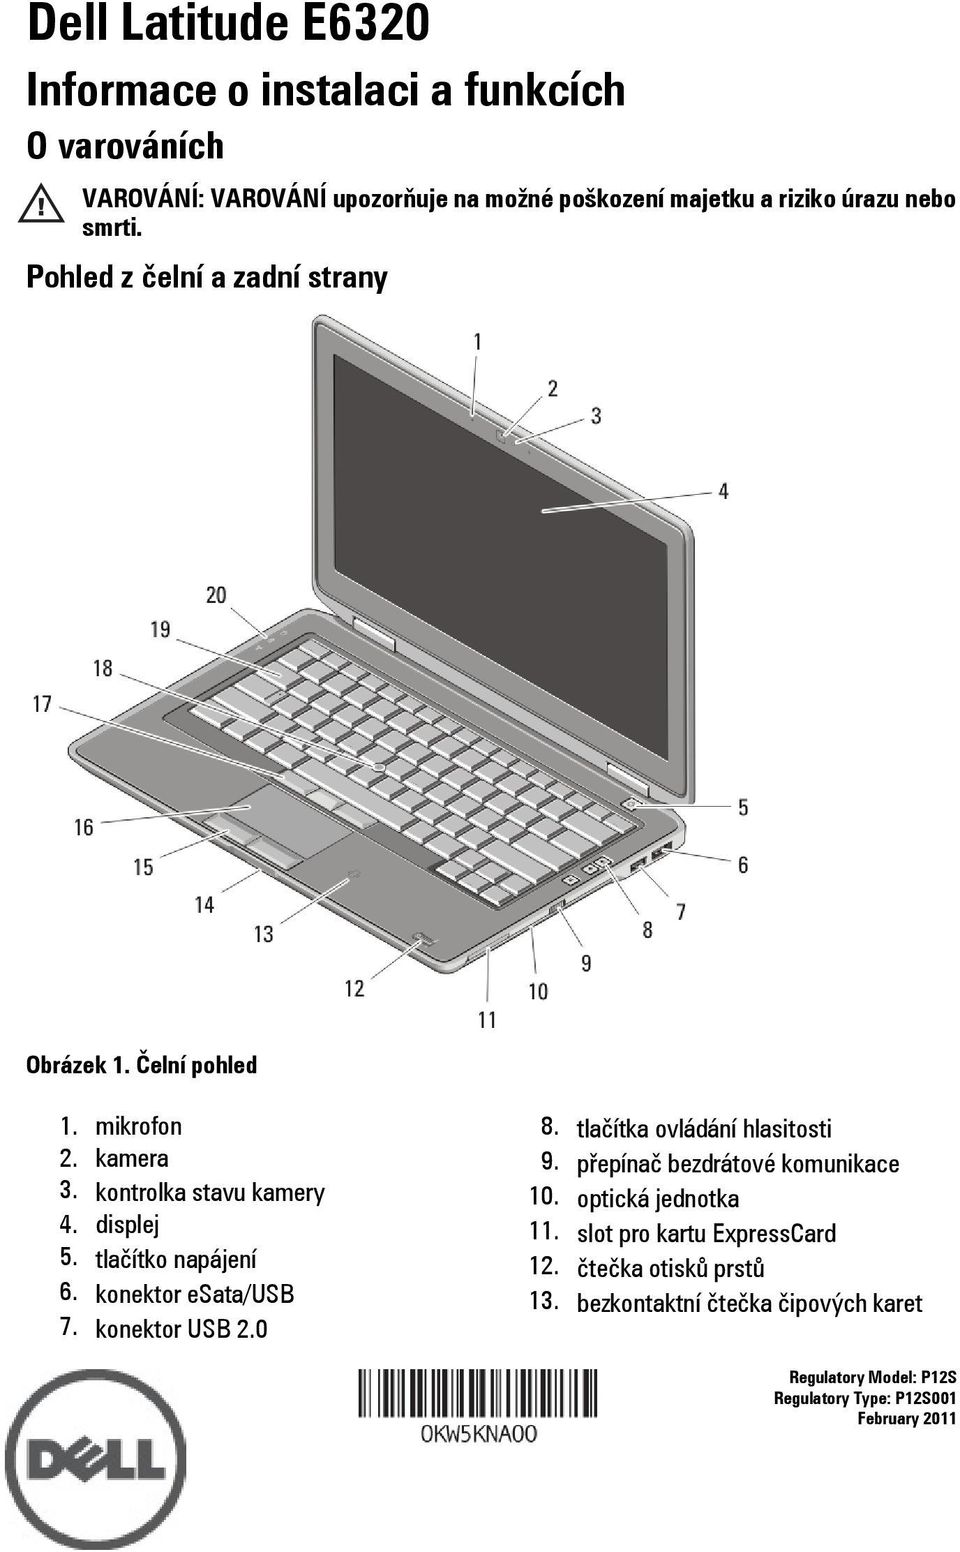 tlačítko napájení 6. konektor esata/usb 7. konektor USB 2.0 8. tlačítka ovládání hlasitosti 9. přepínač bezdrátové komunikace 10.